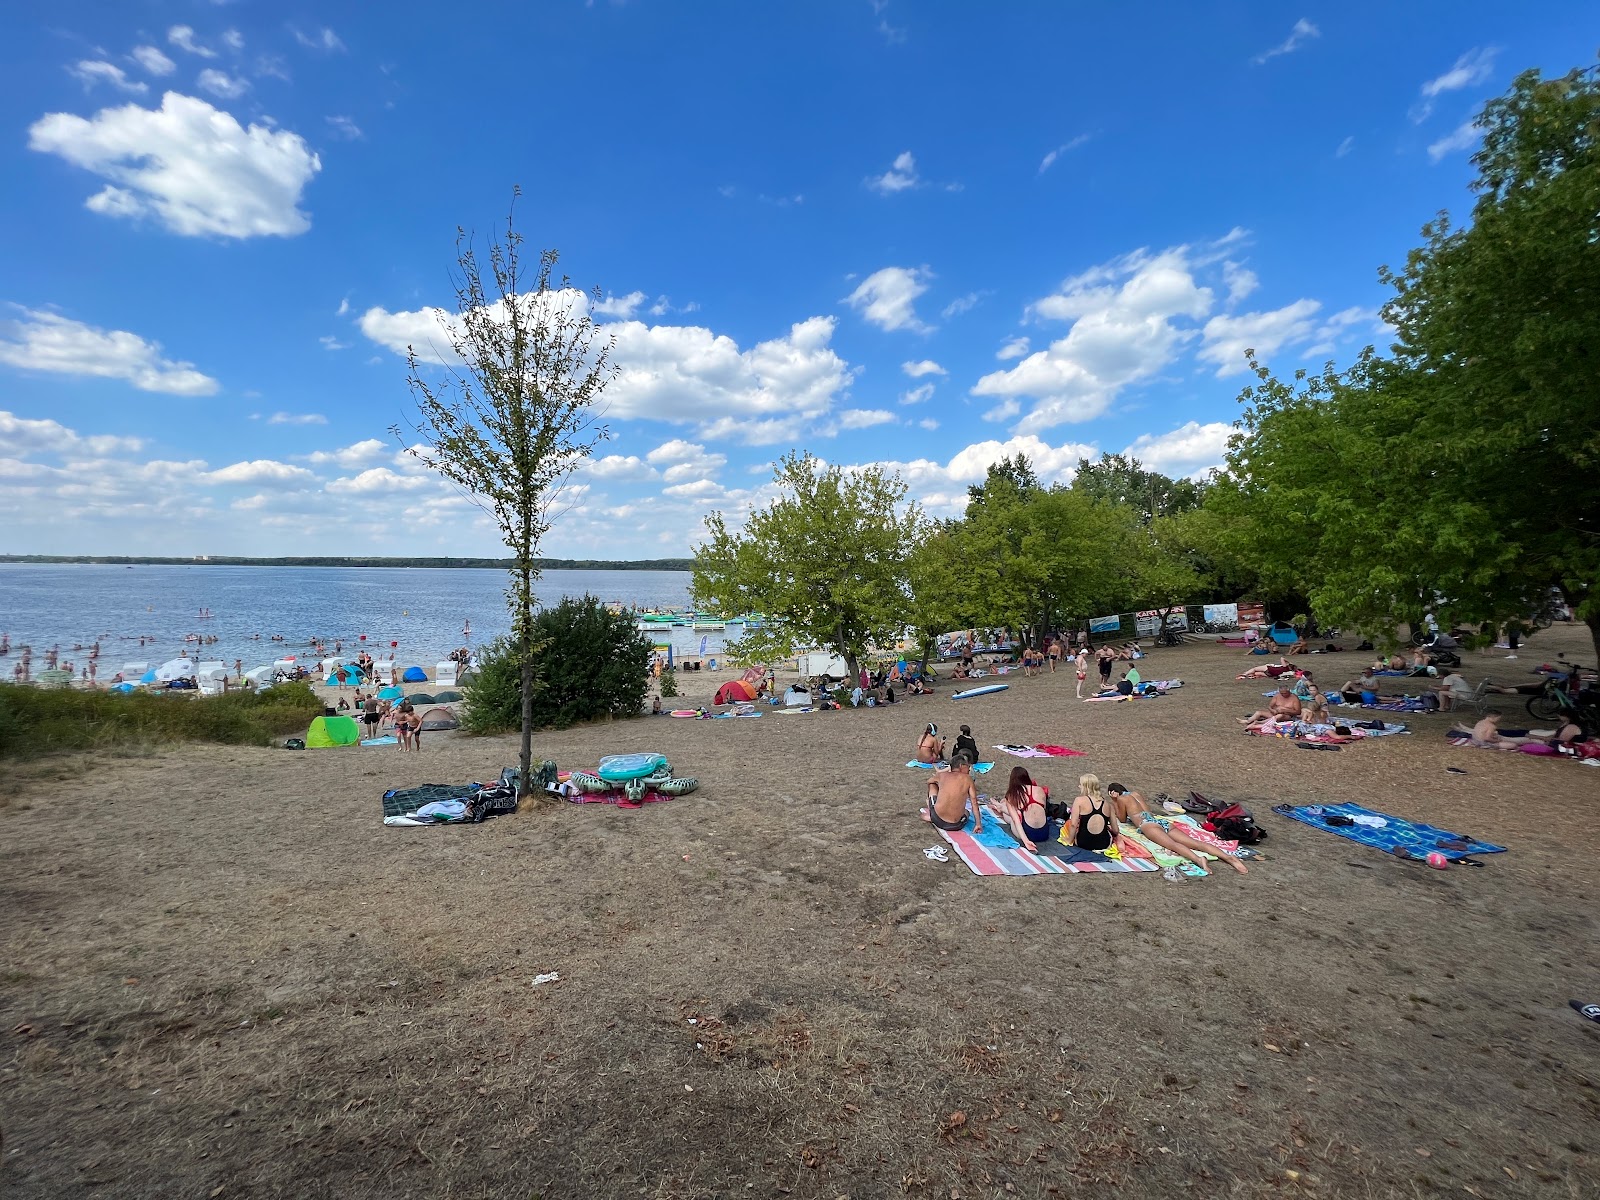 Zdjęcie Plaża Grosskoschen - popularne miejsce wśród znawców relaksu